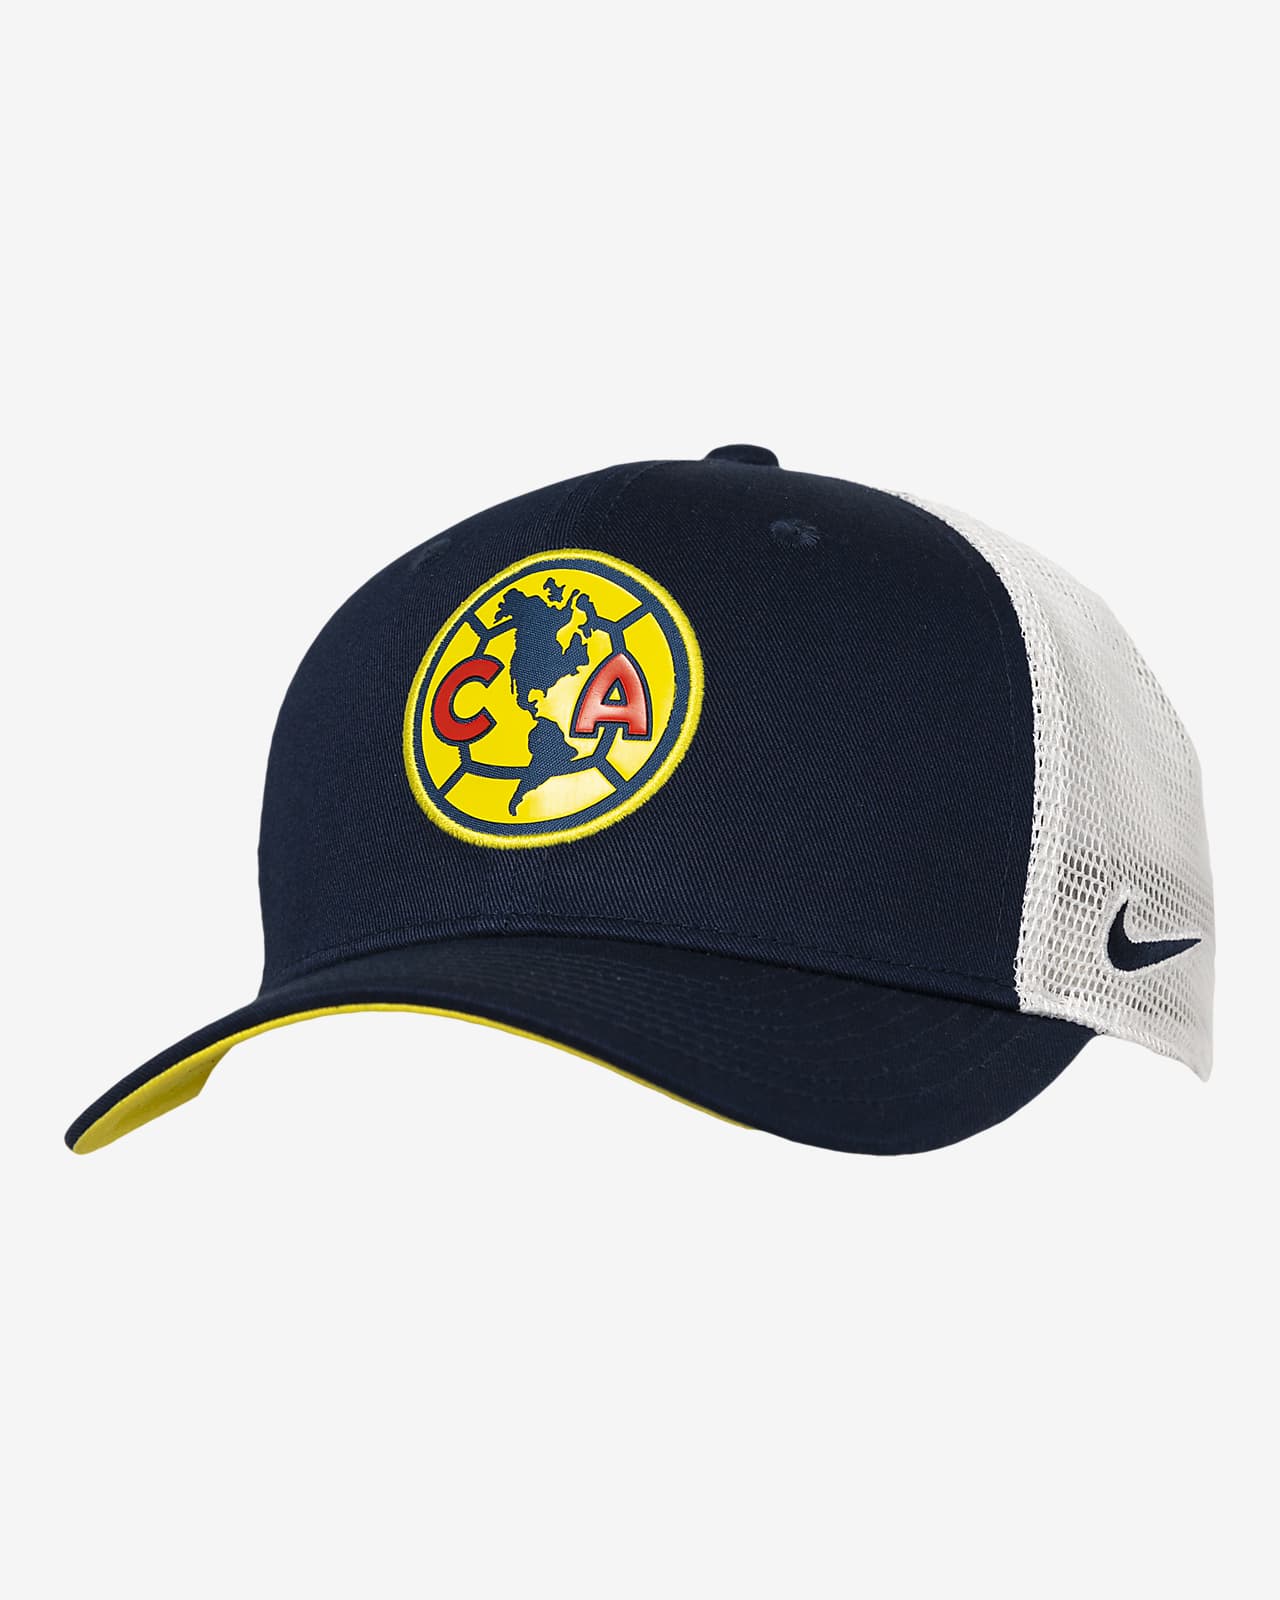 Club América Classic99 Nike Soccer Trucker Cap